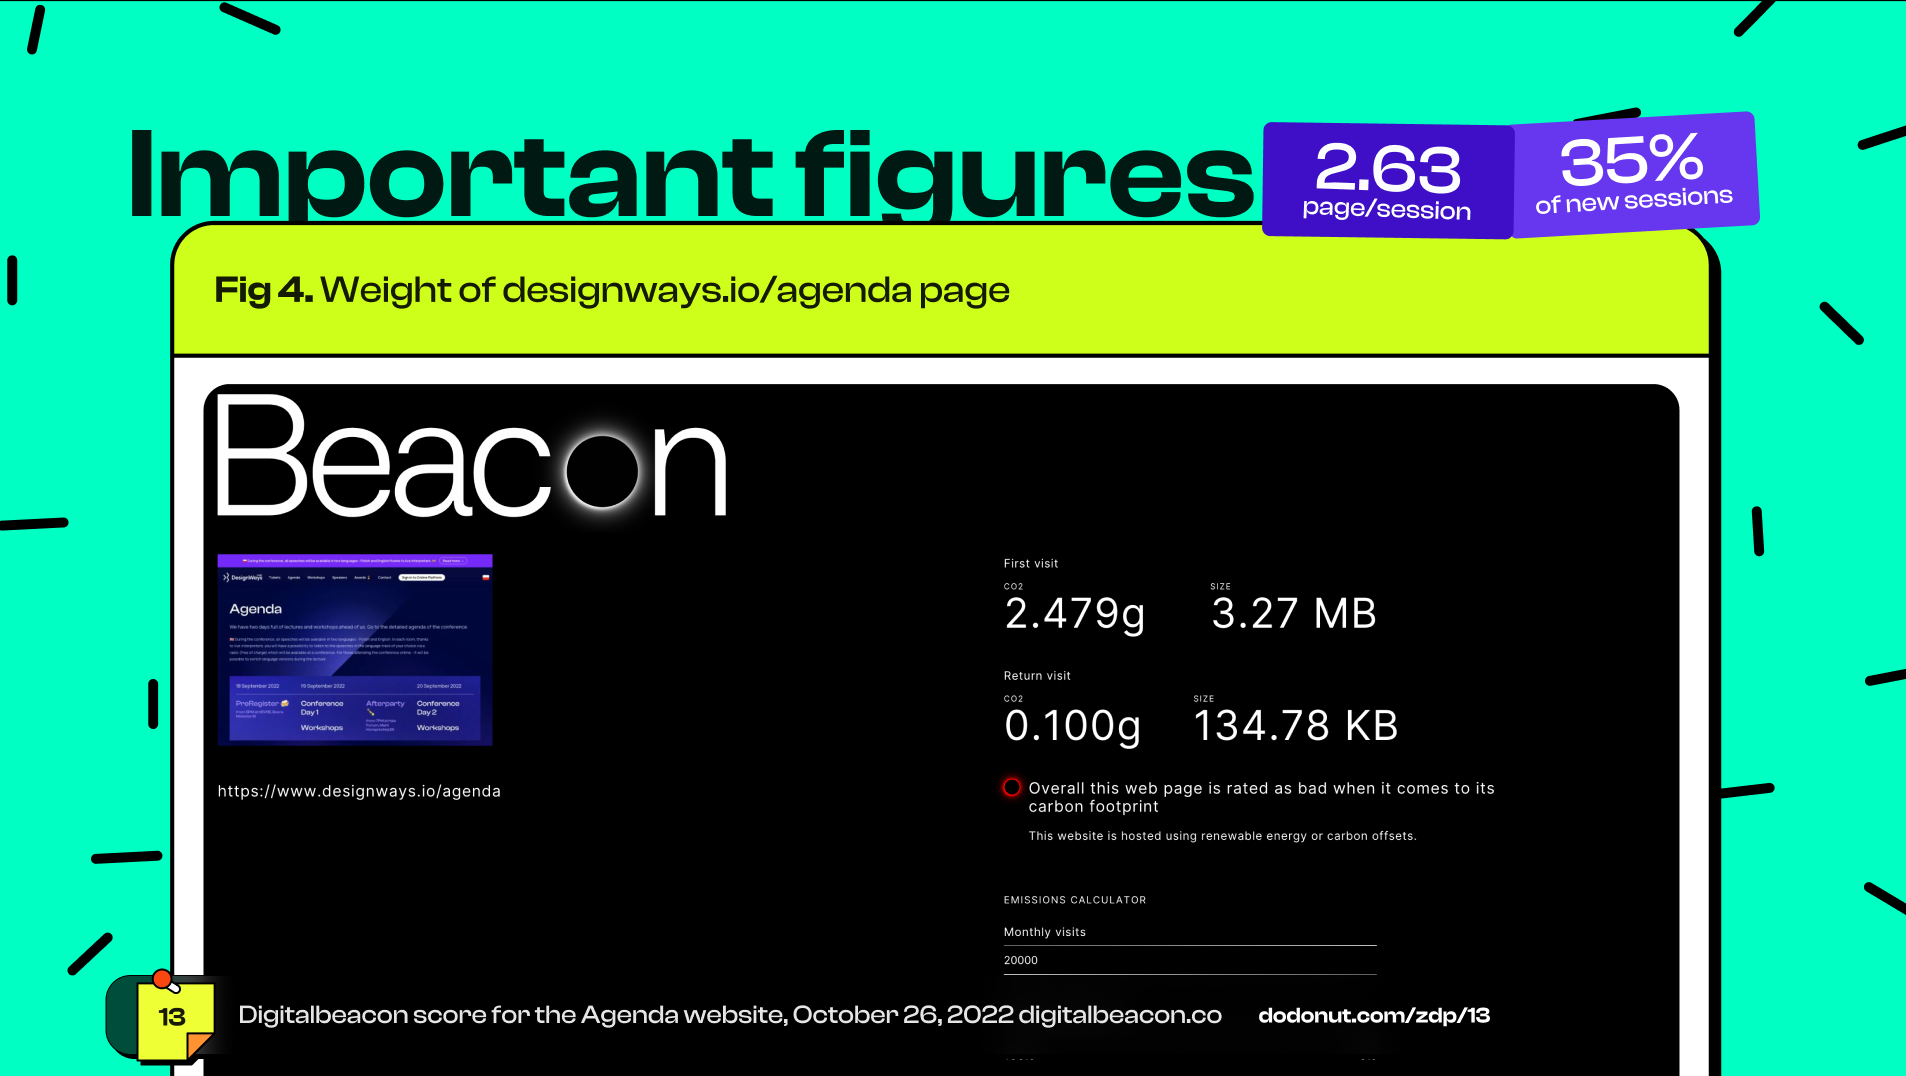 Beacon software scan of digital agenda page of Designways.io